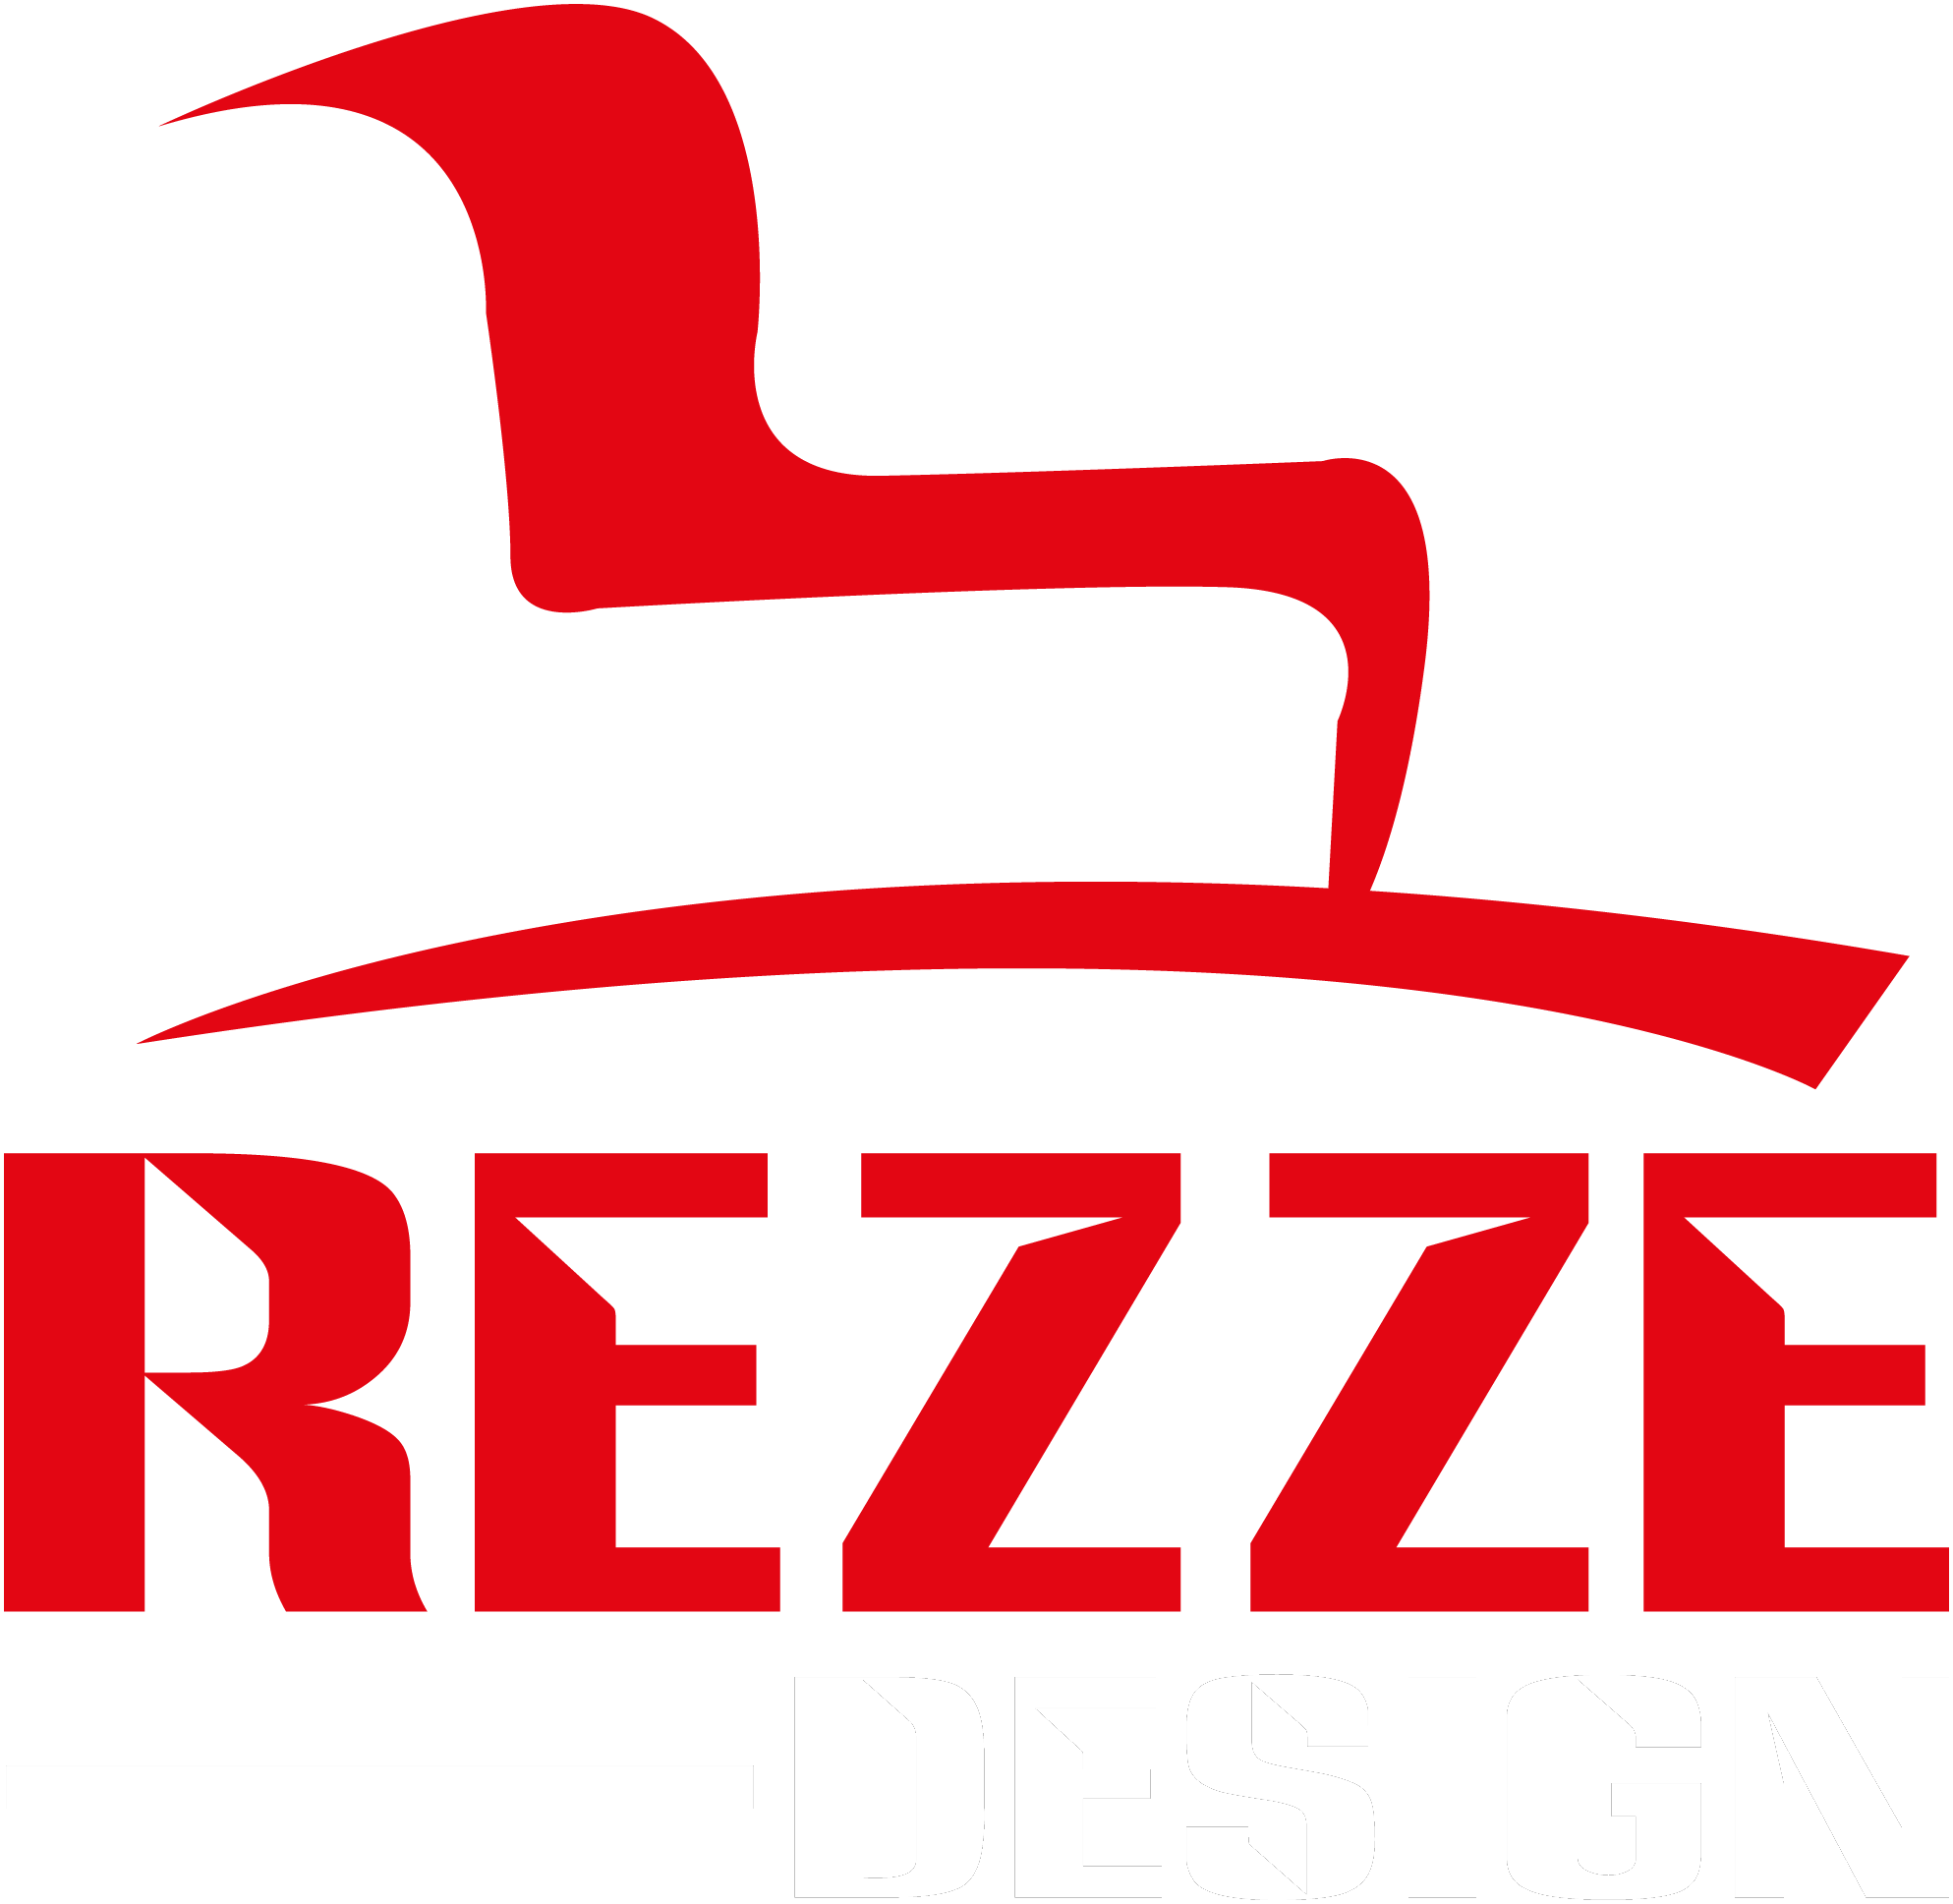 Rezze Design